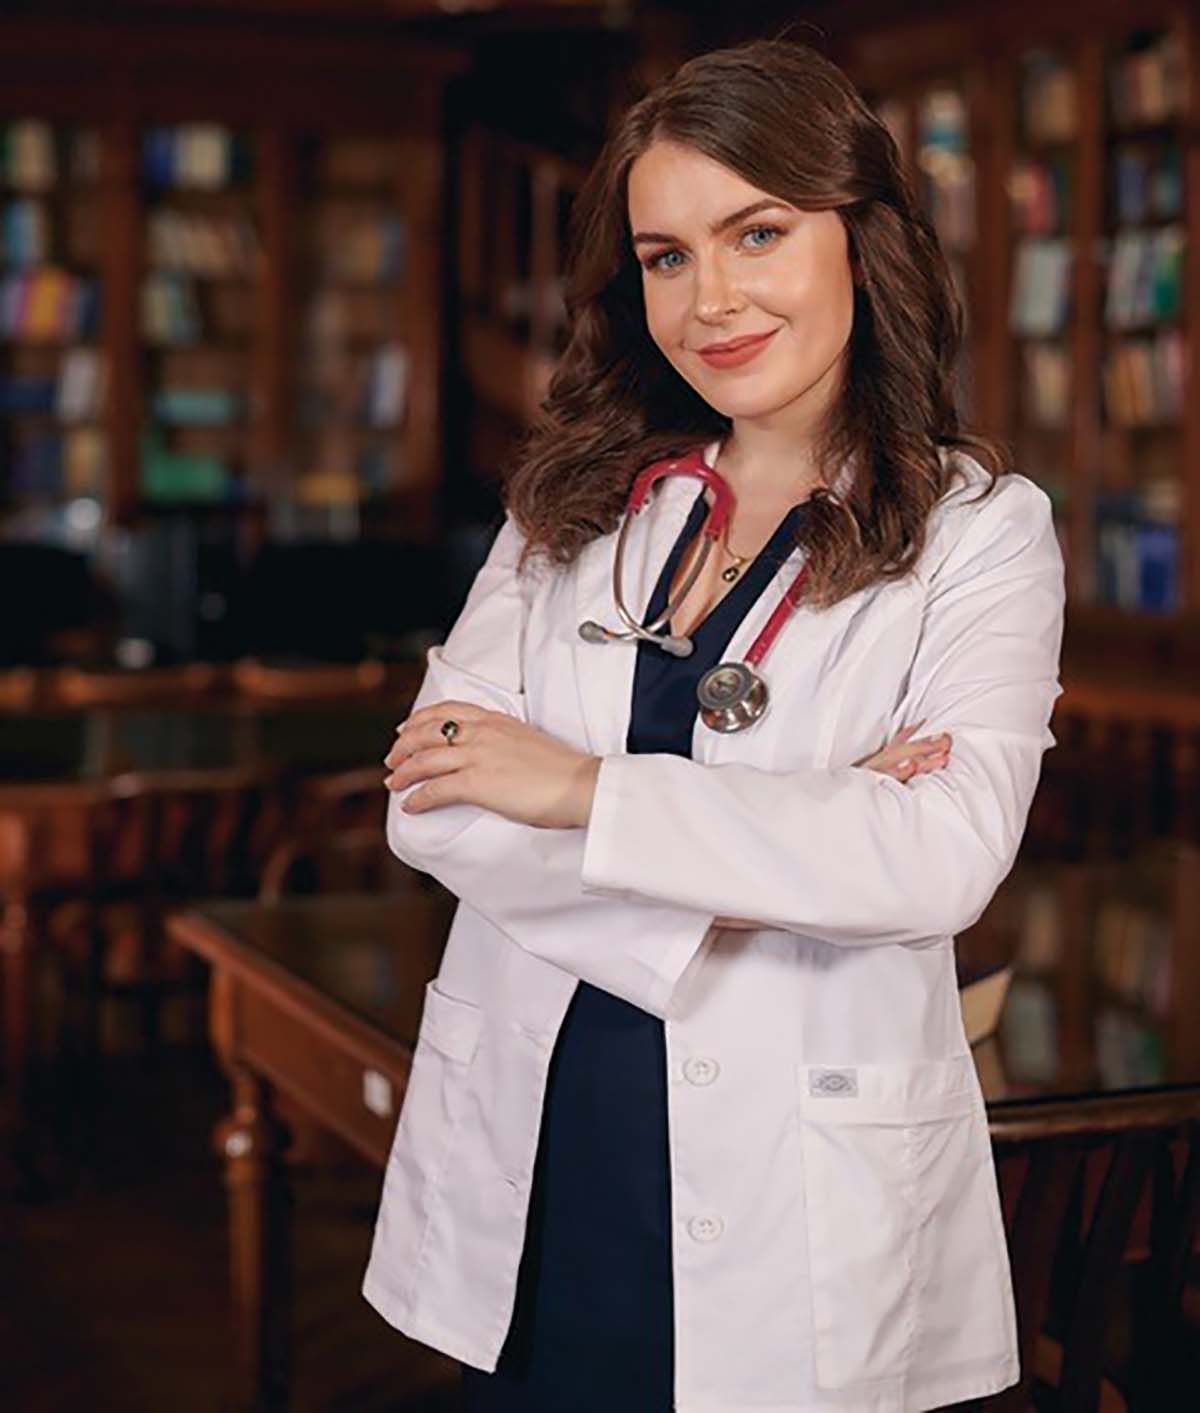 Dr. Ioana-Alexandra Gal